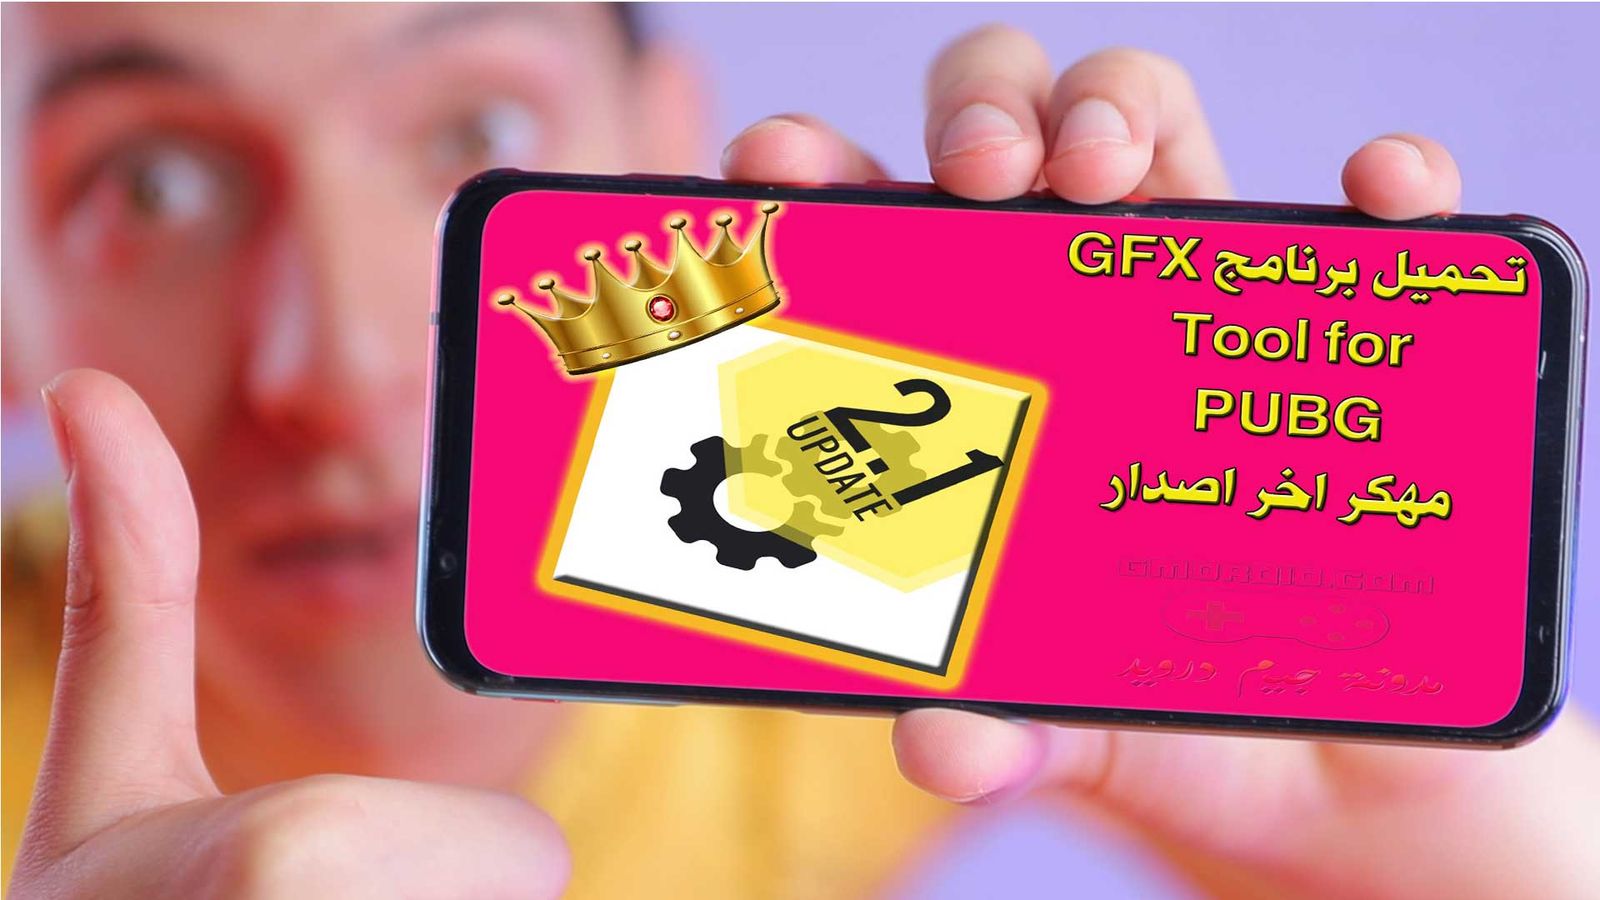 تحميل برنامج GFX Tool for PUBG مهكر اخر اصدار .